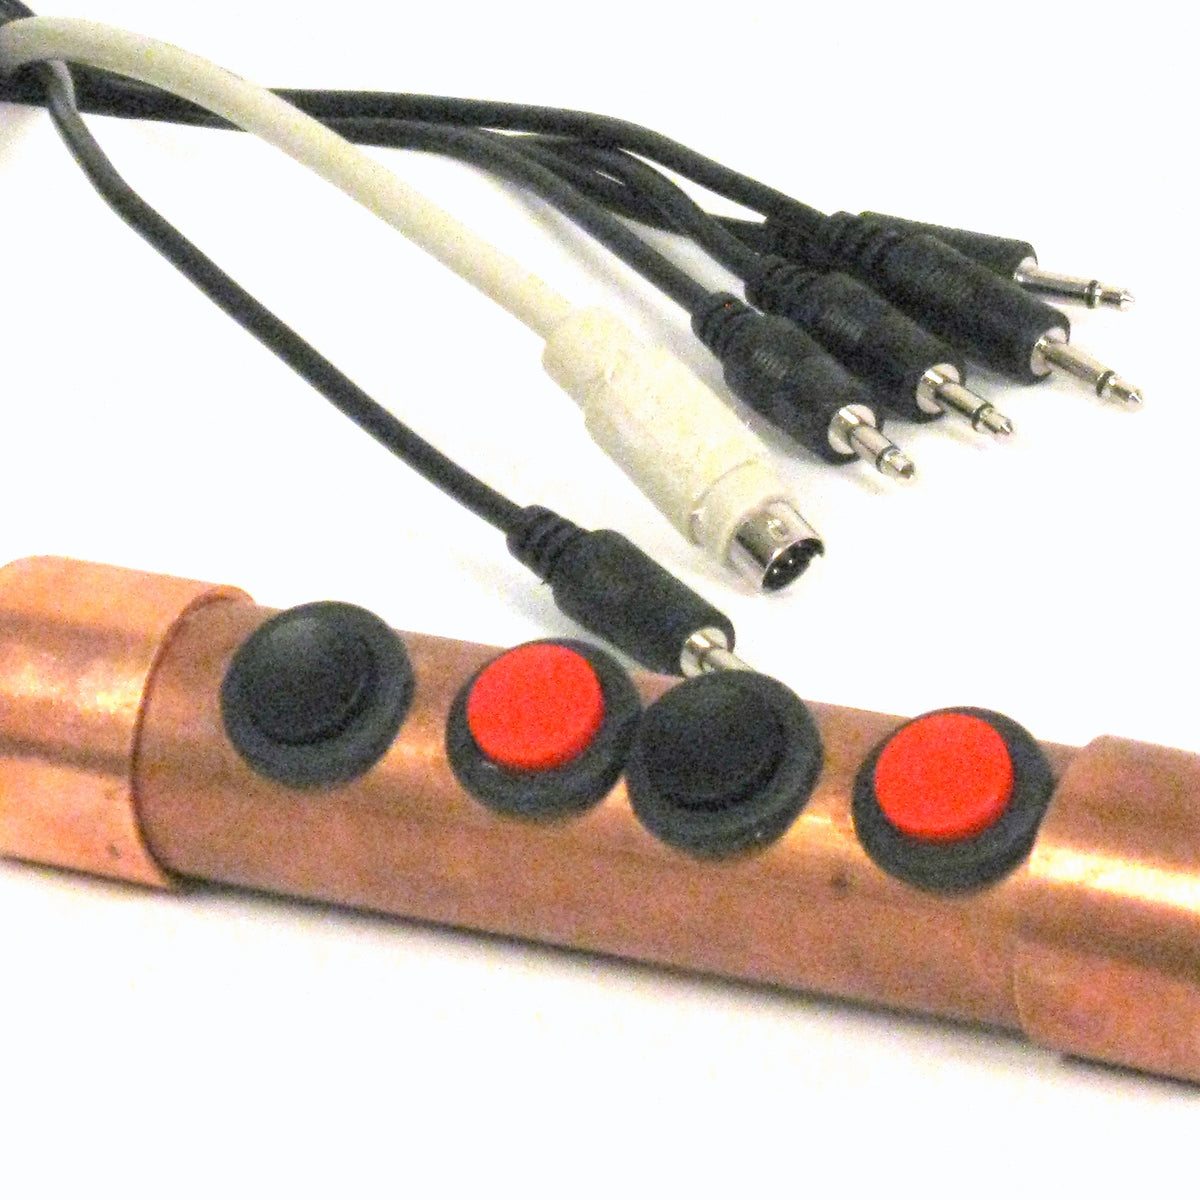 Pouce de polyvalence, bouche, menton ou doigt mini joystick analogique avec tube SIP-n-puff plus intégré plus bouton de joie